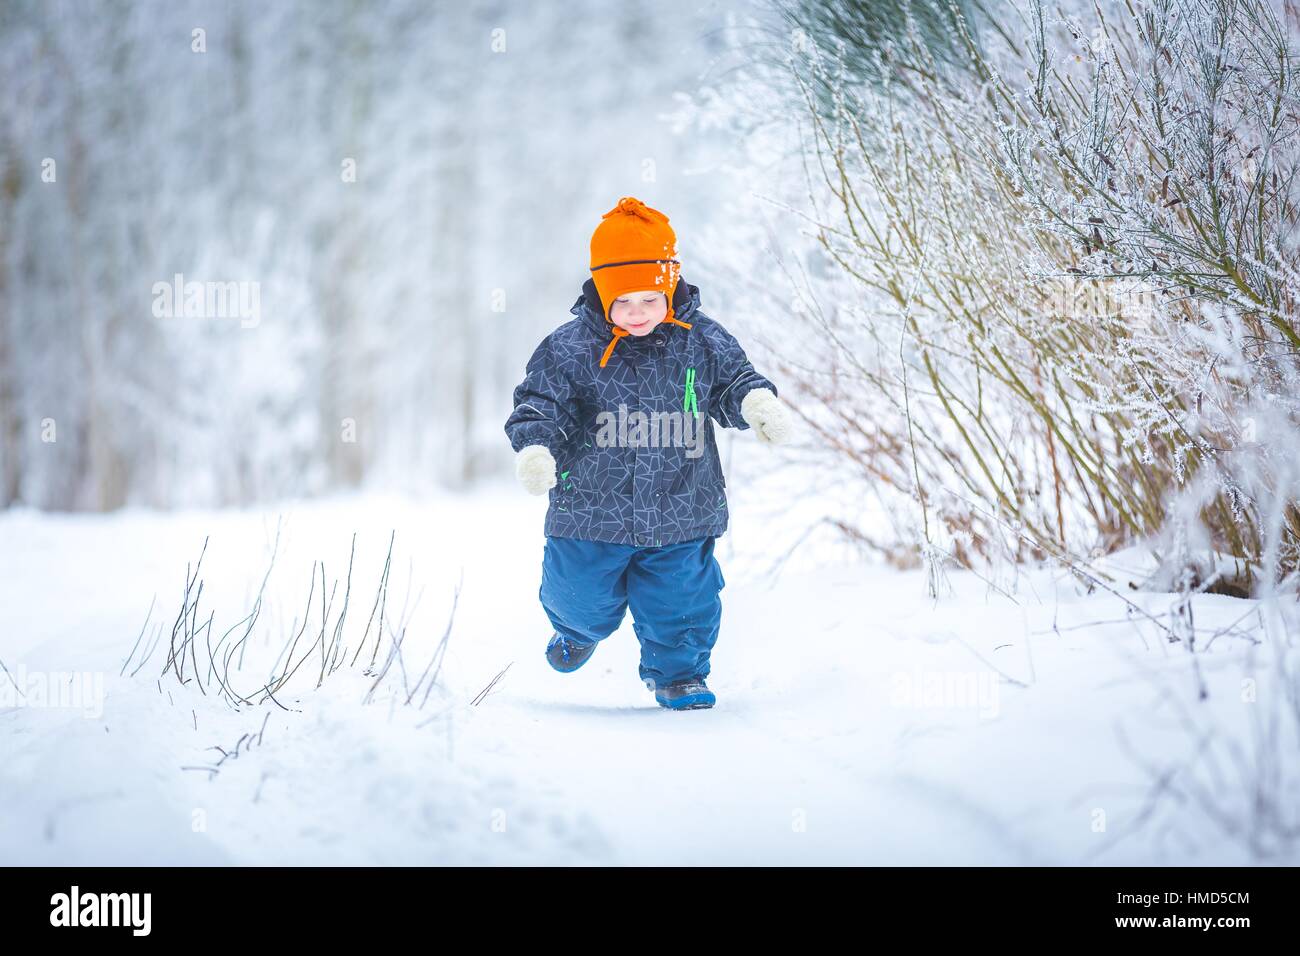 Felice ragazzo giocando all'aperto in inverno. Bambino caucasico in arancione hat e vestiti caldi a giocare all'aperto in inverno. Foto Stock